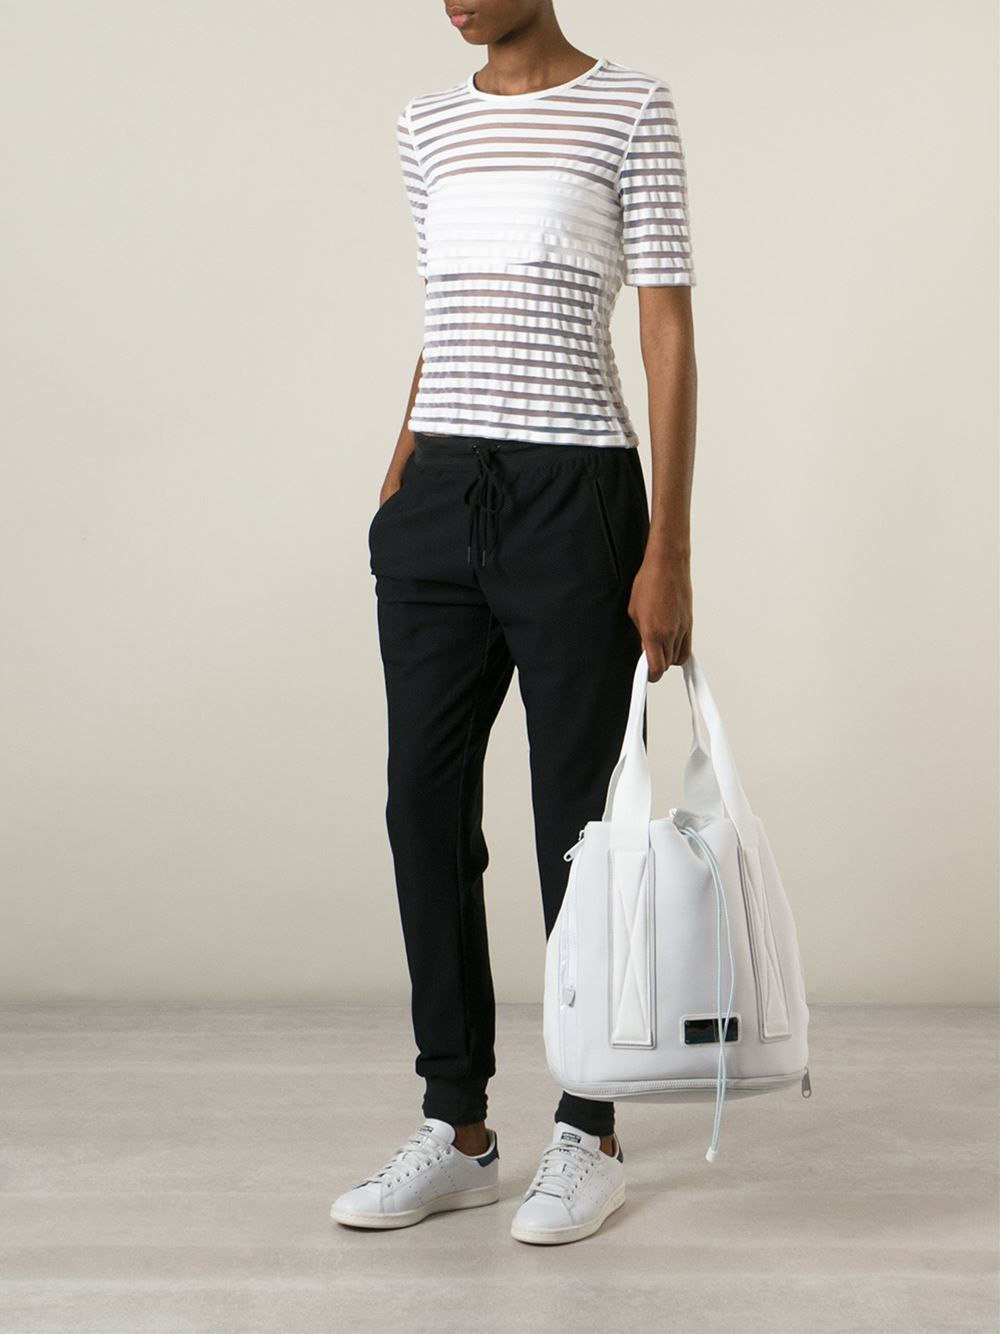 Lyst - Adidas by stella mccartney Medium Tennis Bag in White